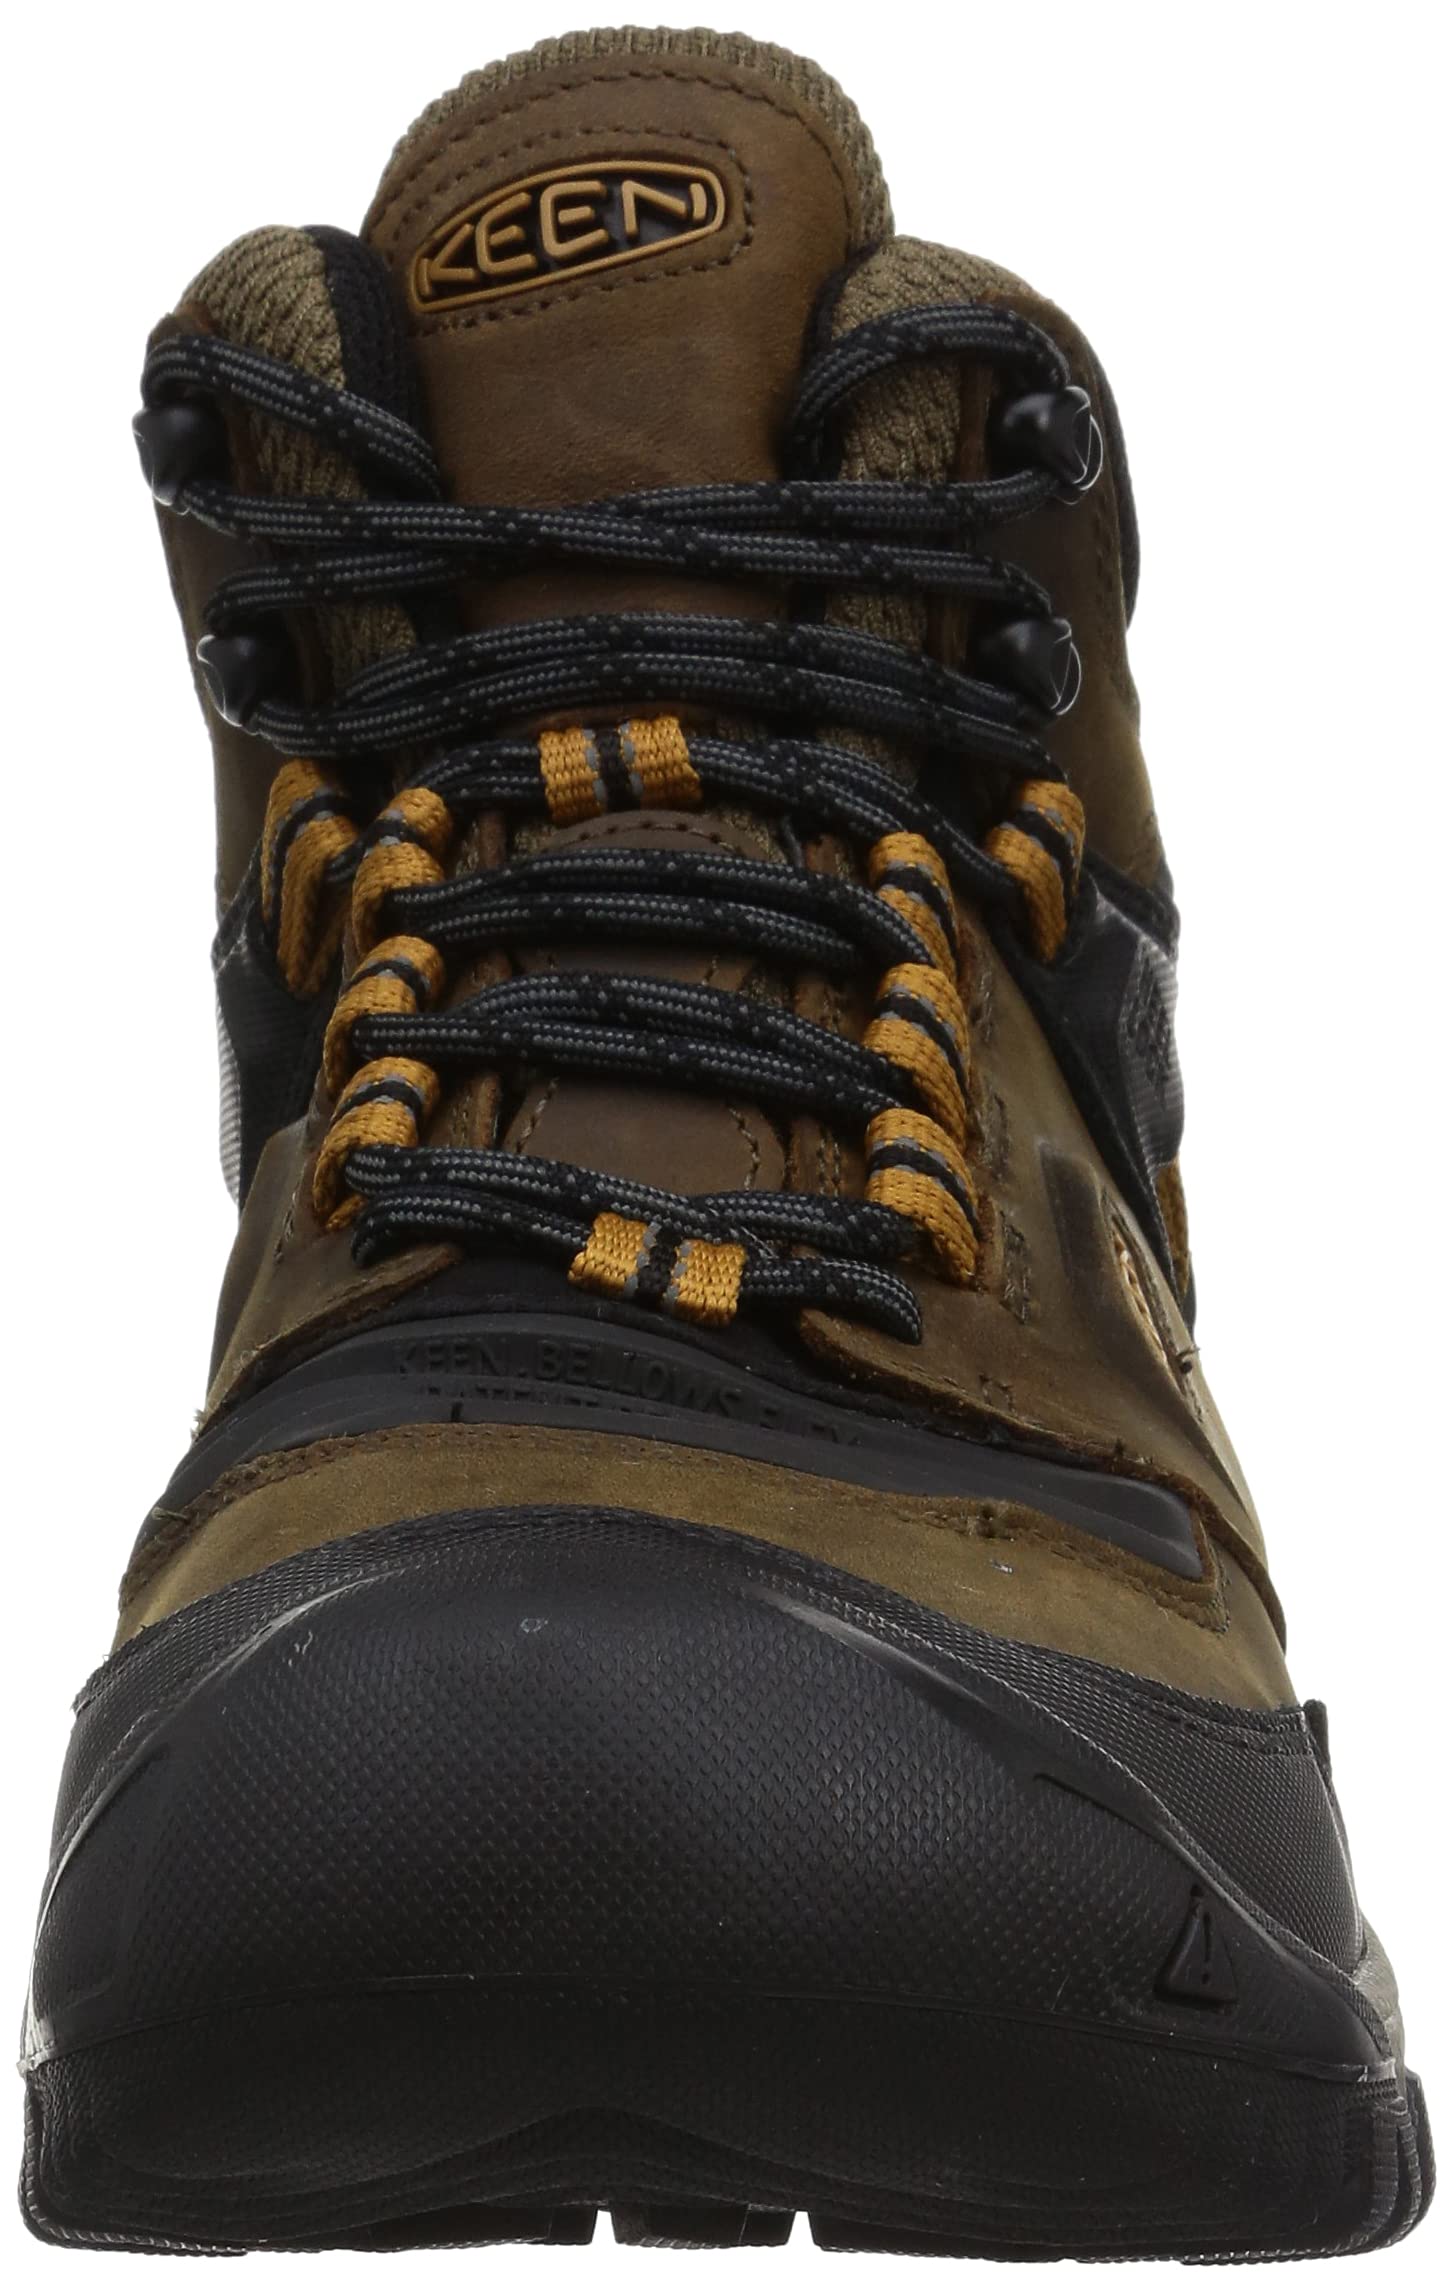 KEEN Men's Ridge Flex Mid Height Waterproof Hiking Boot